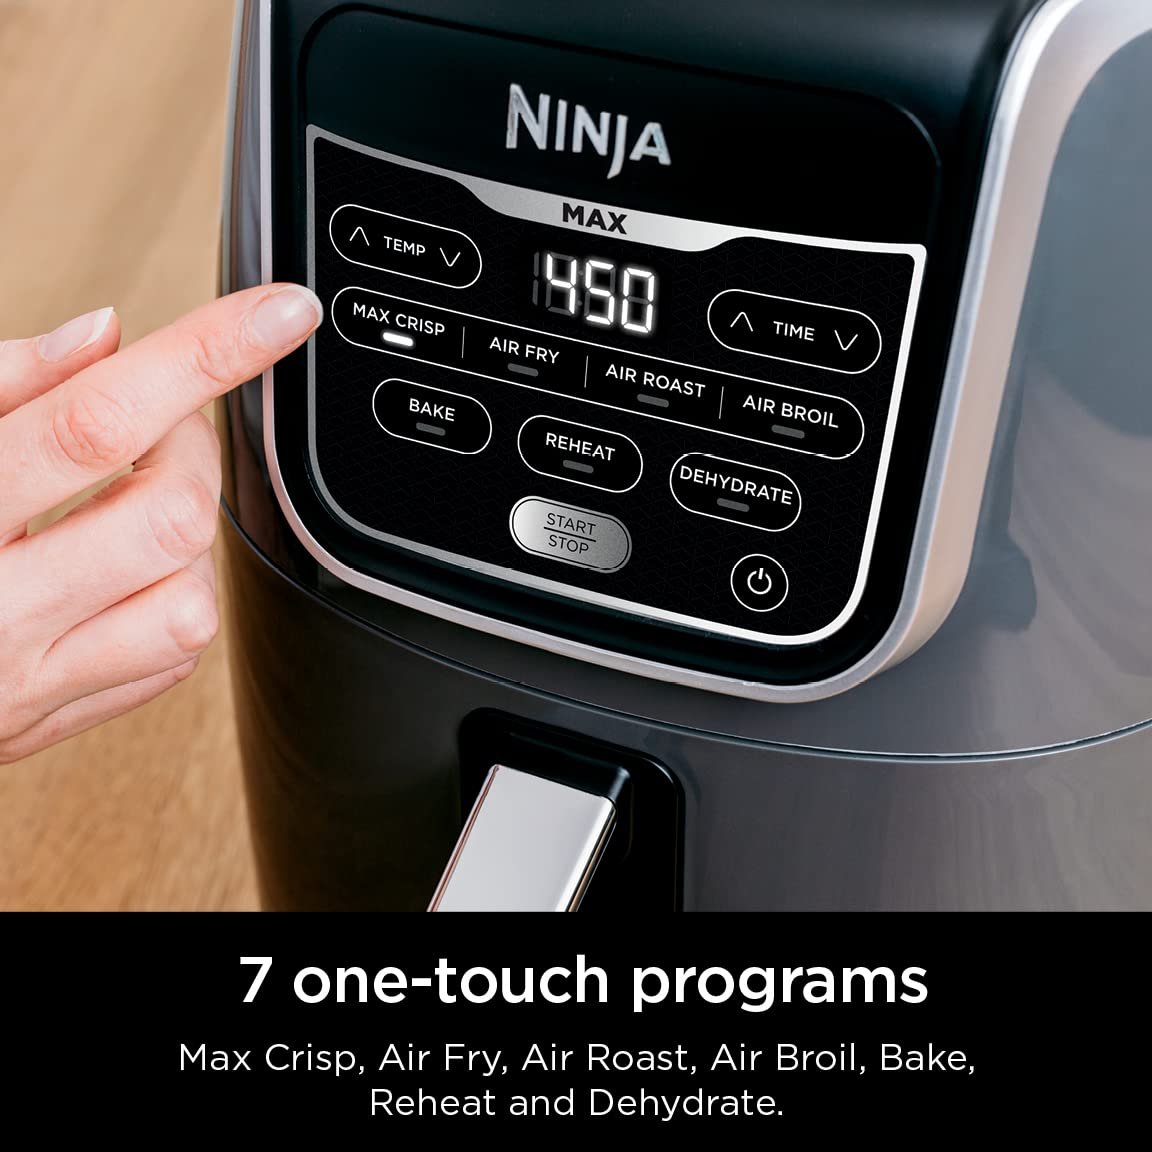 Ninja Af161 Max Xl Air Fryer Cozinha, Crocância, Assa, 5.2l - 4